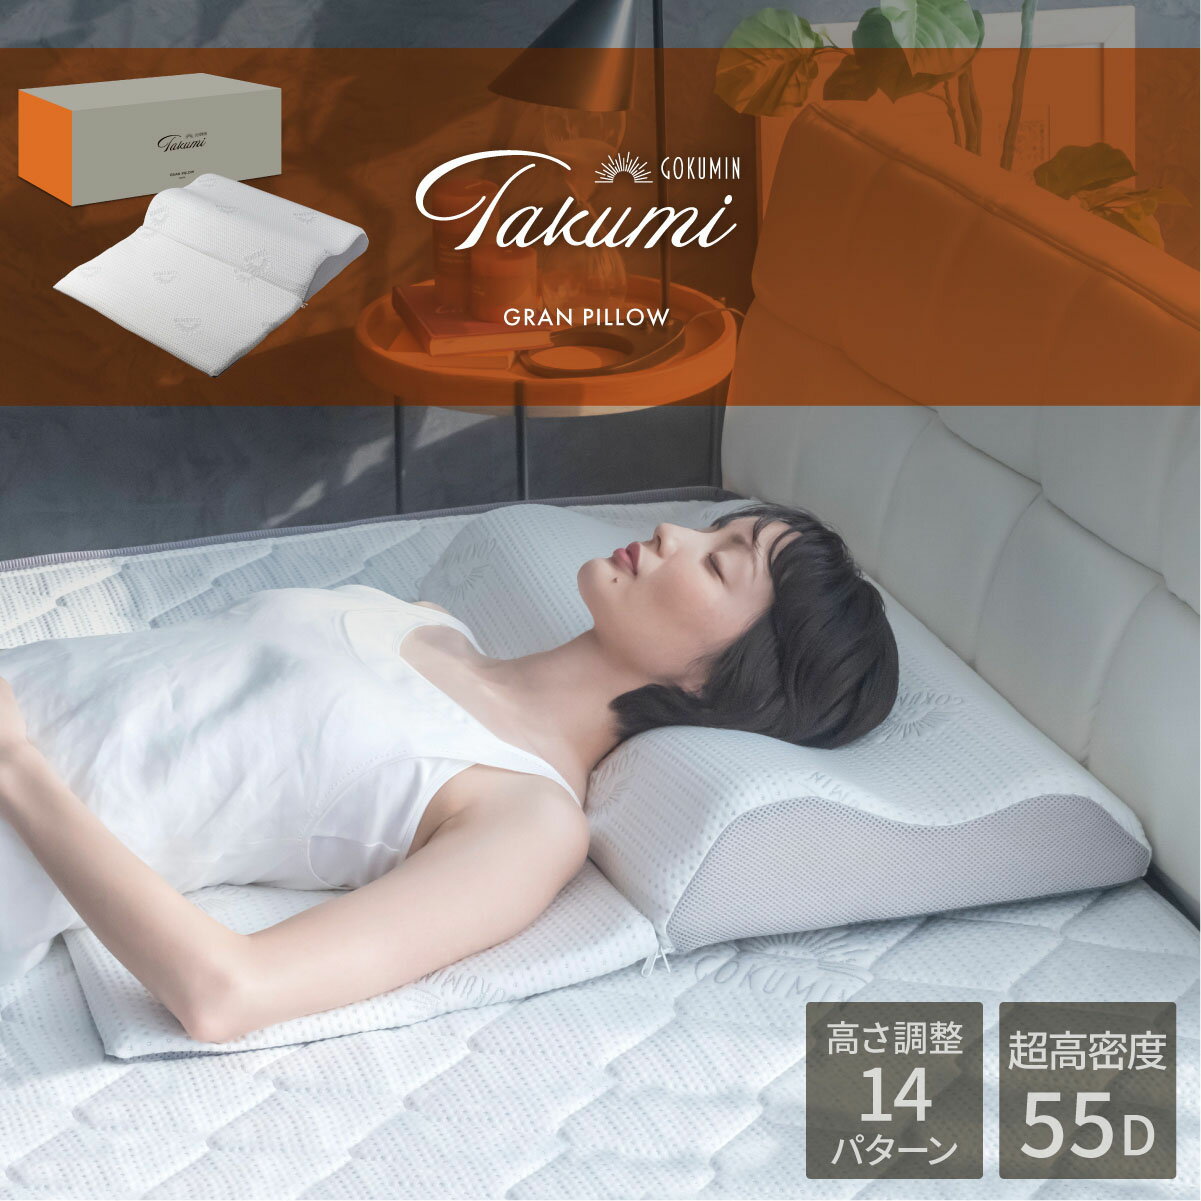 枕 Takumi グランピロー 低反発枕 20パターンの寝心地 GOKUMIN まくら | ごくみん枕 14段階 高さ調整 大きめ 寝返り …